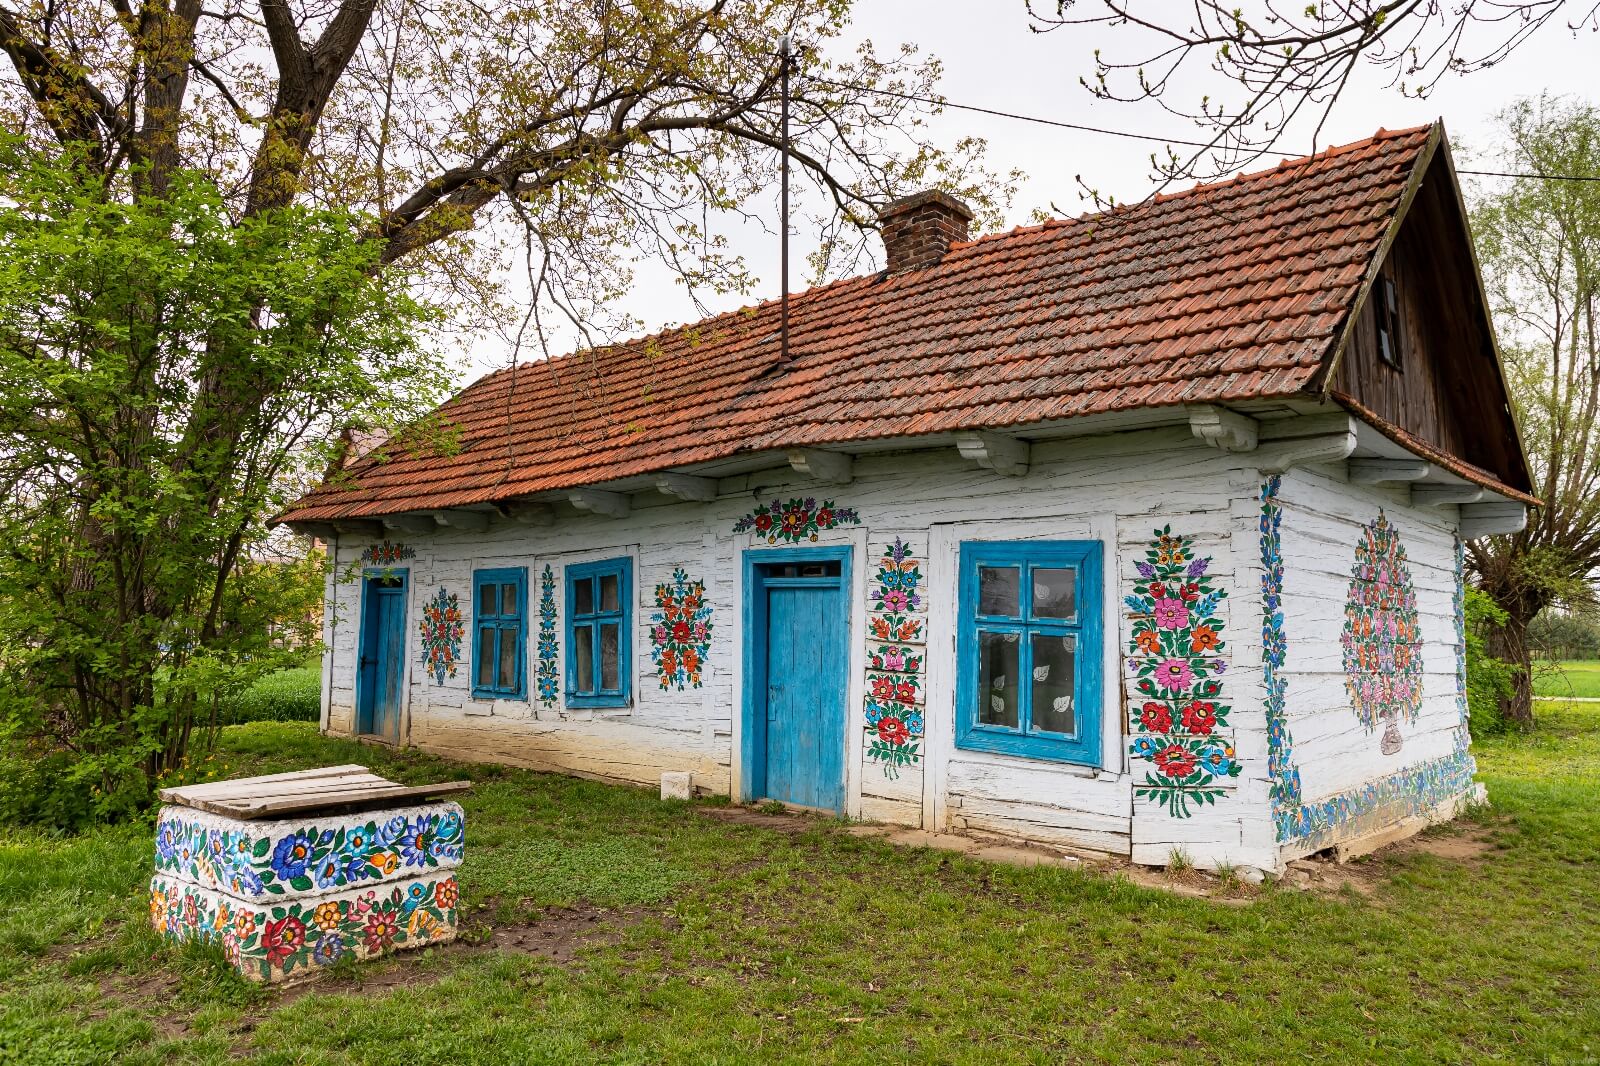 Image of Zalipie Painted Houses by Adelheid Smitt